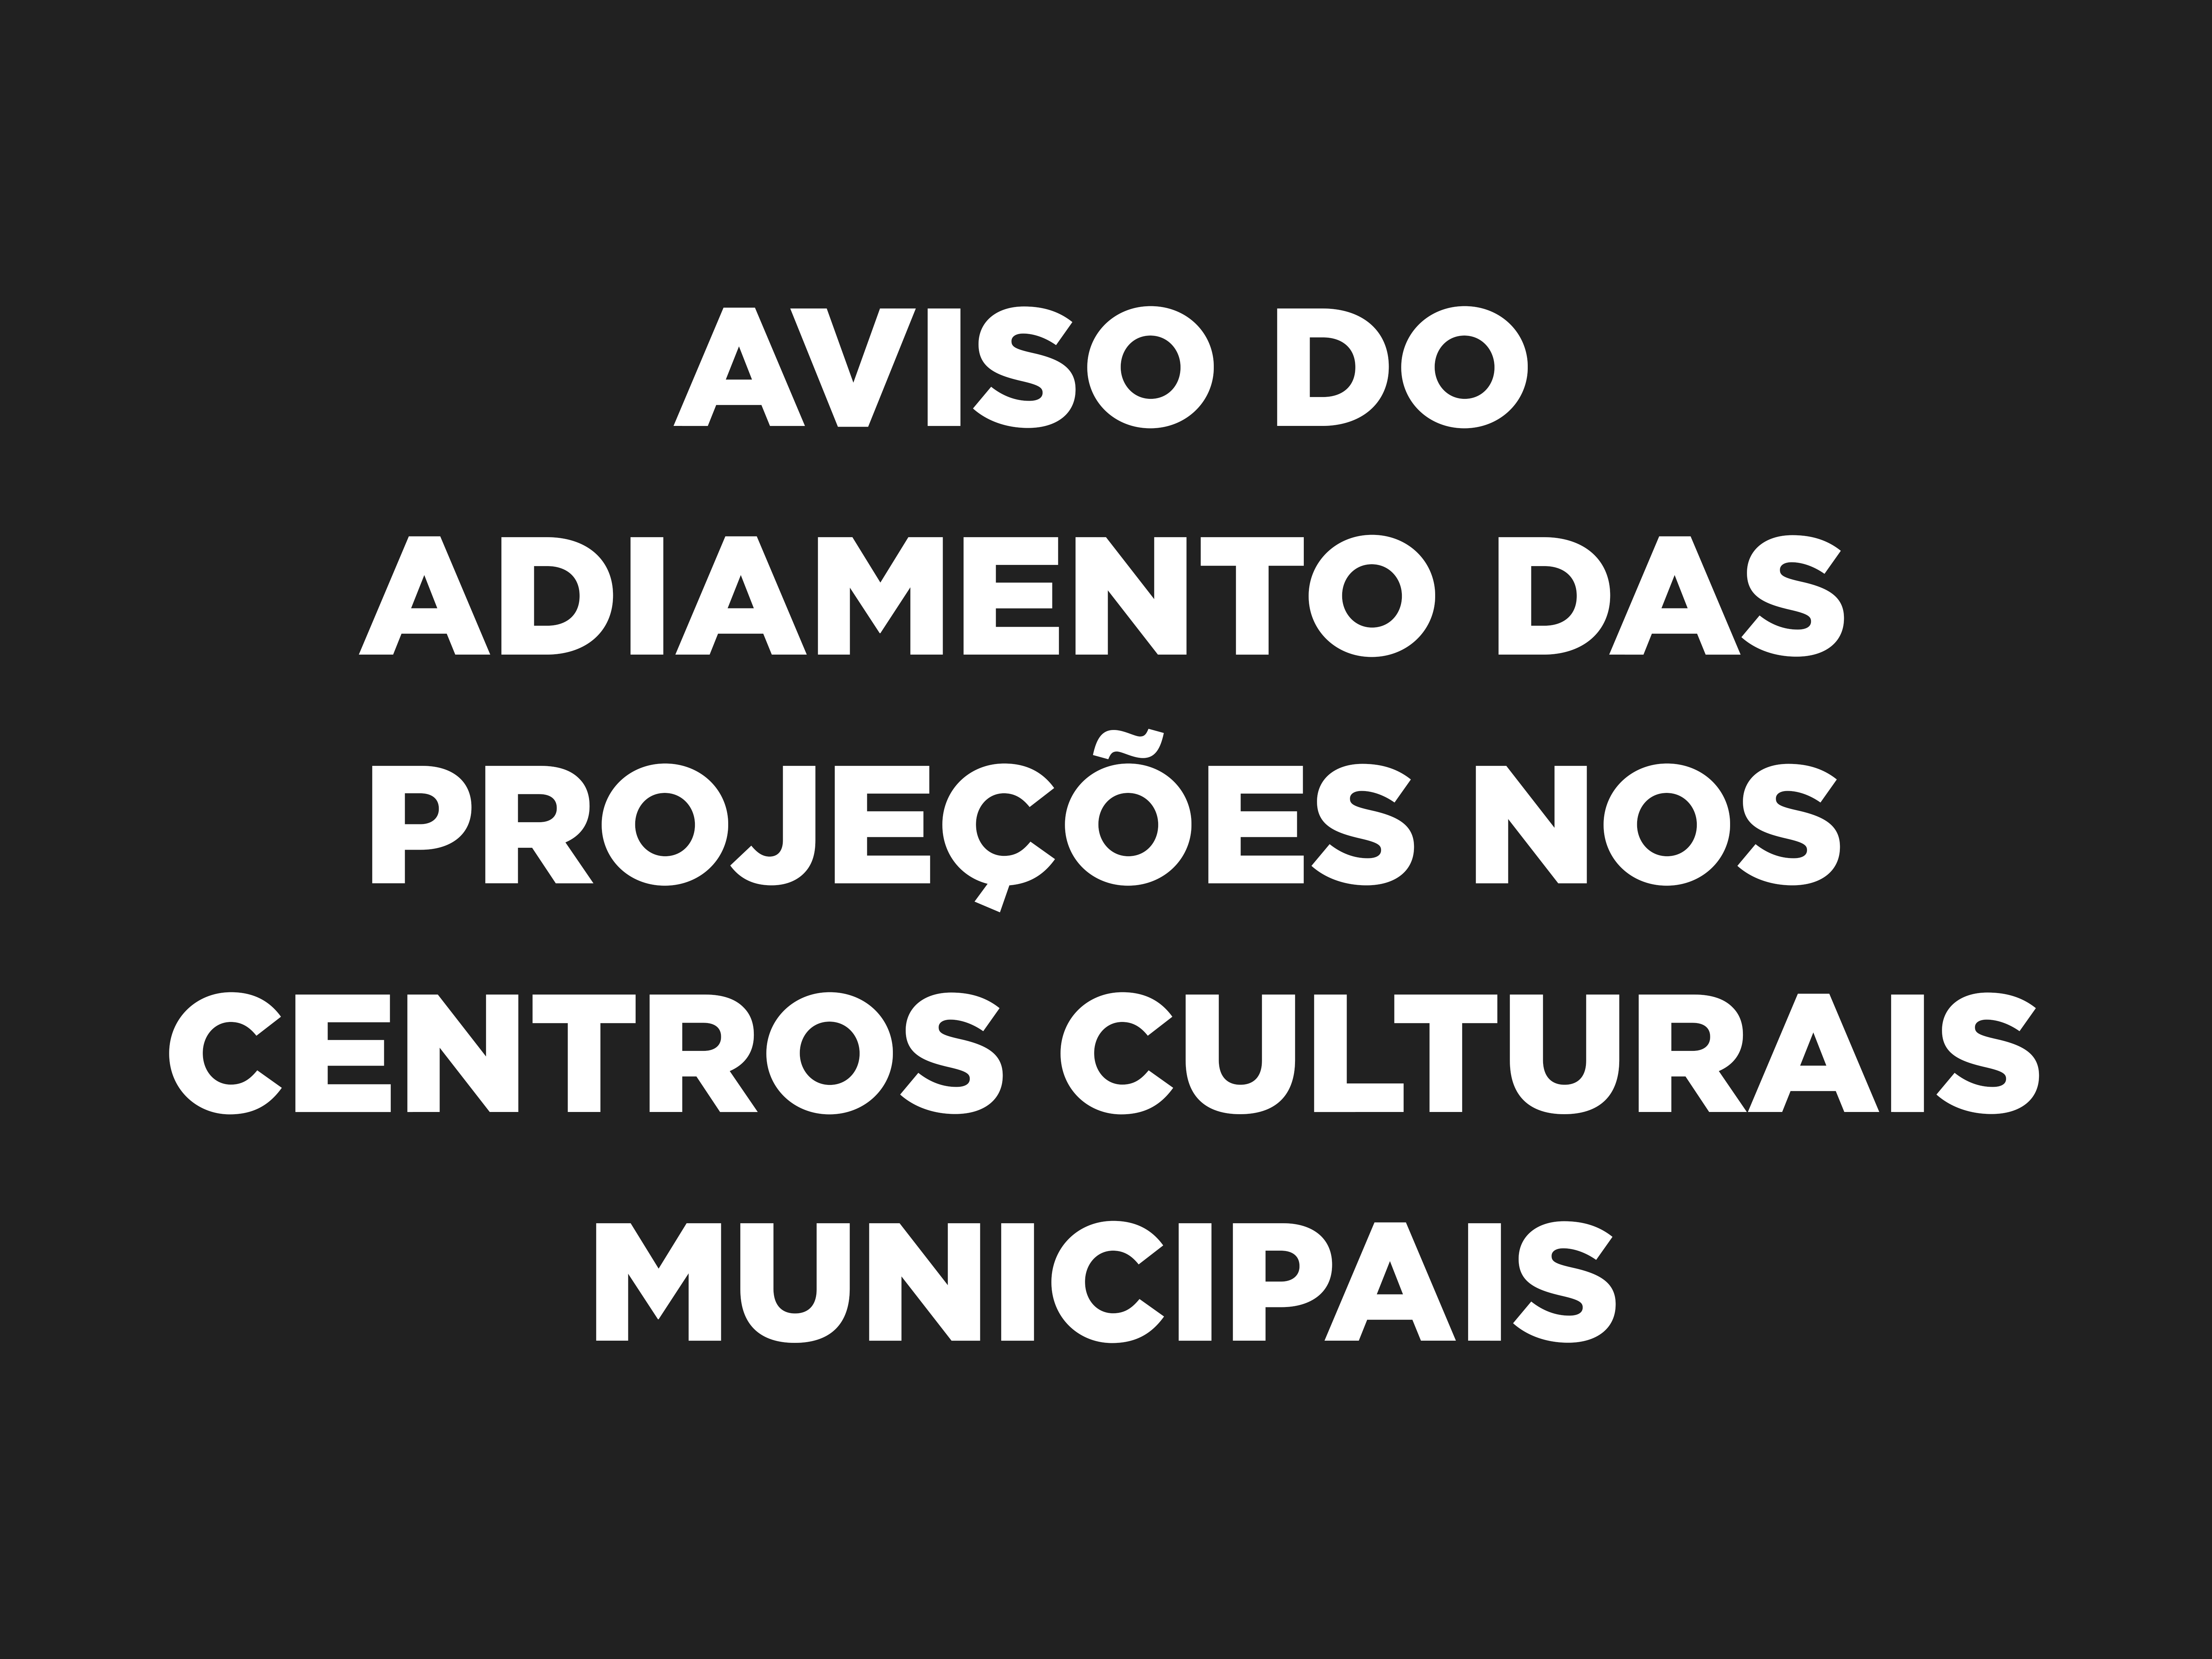 Aviso do adiamento das projeções nos centros culturais municipais